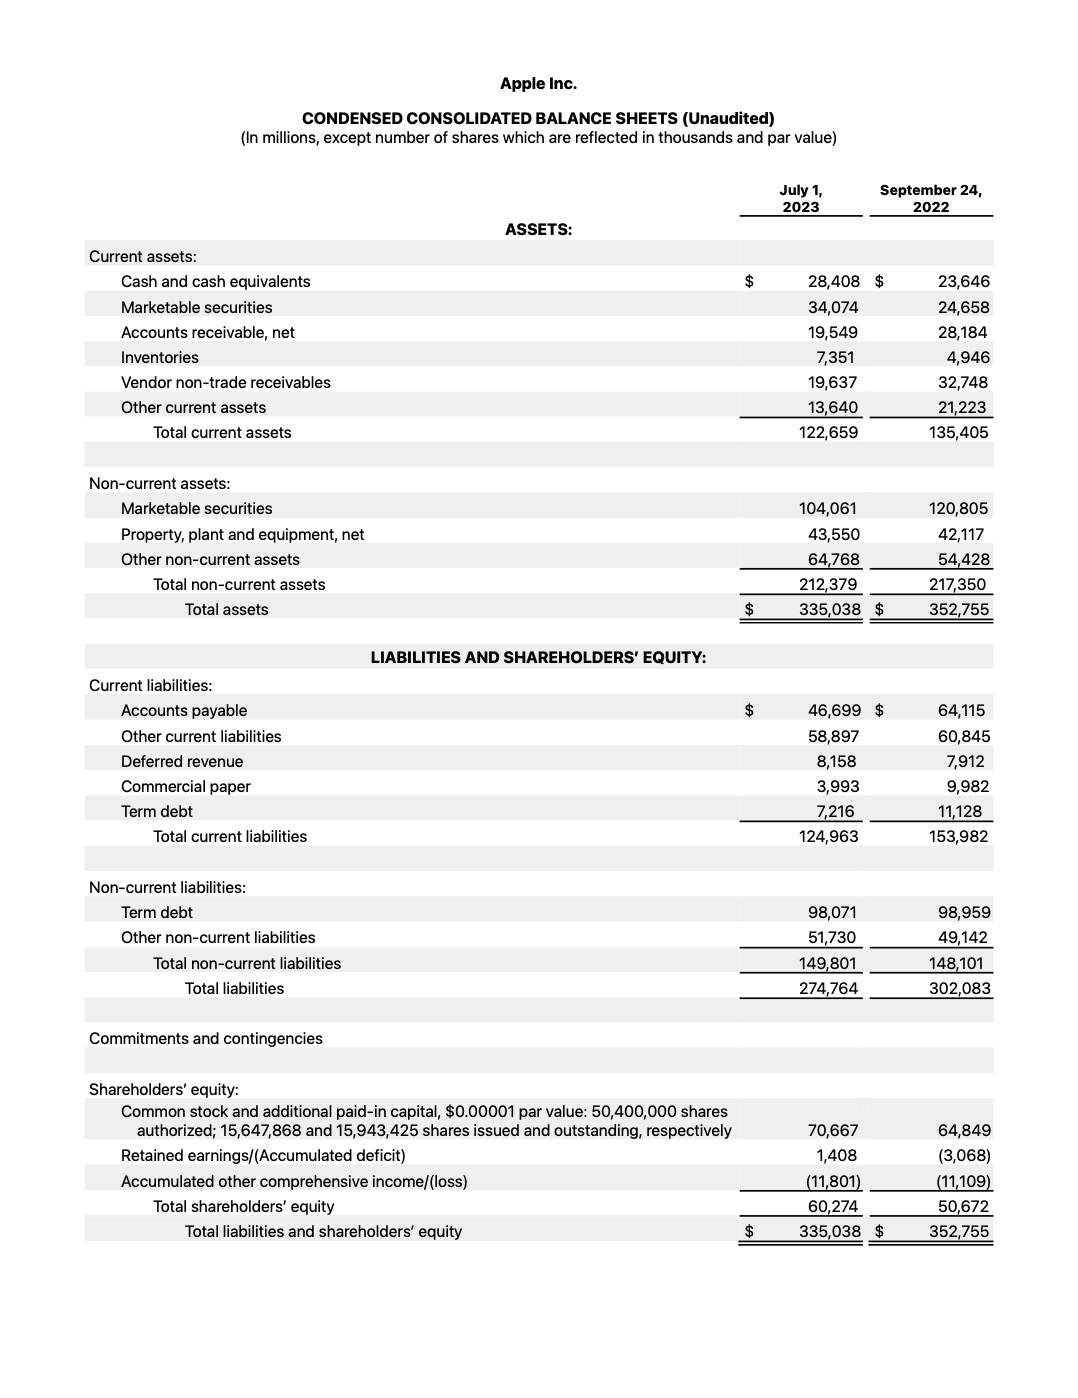 Apple Reports Q3 FY23 Earnings: $81.8 Billion in Revenue, $19.9 Billion in Net Income [Chart]